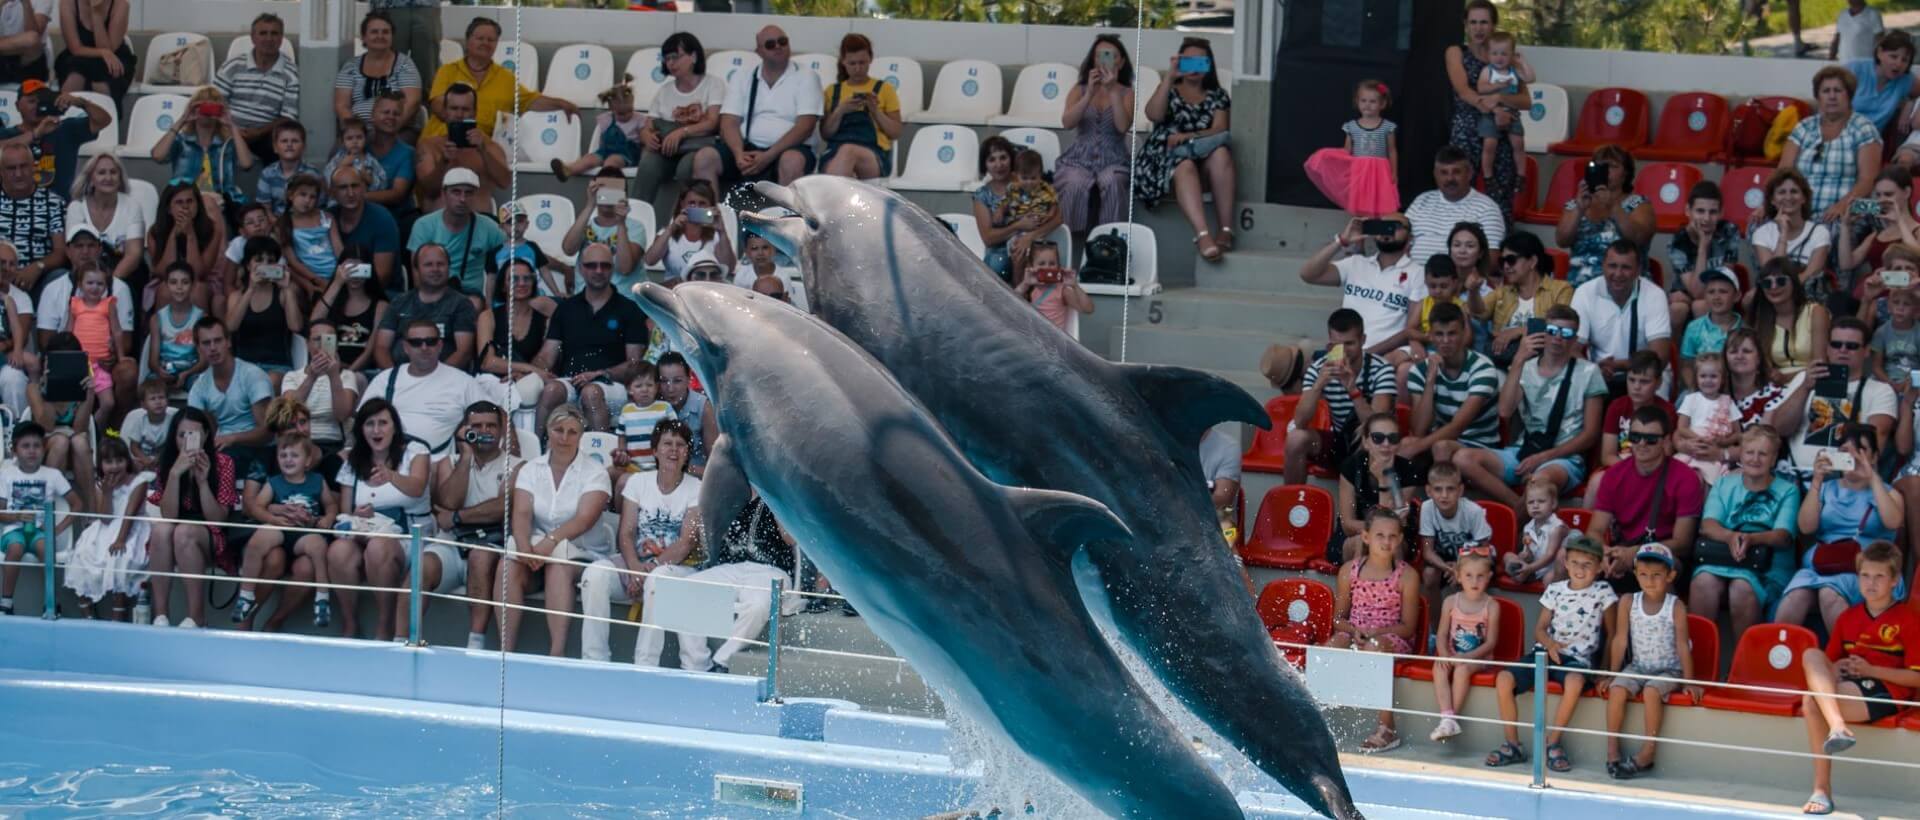 Дневное шоу в дельфинарии для двоих, Харьков - Фото